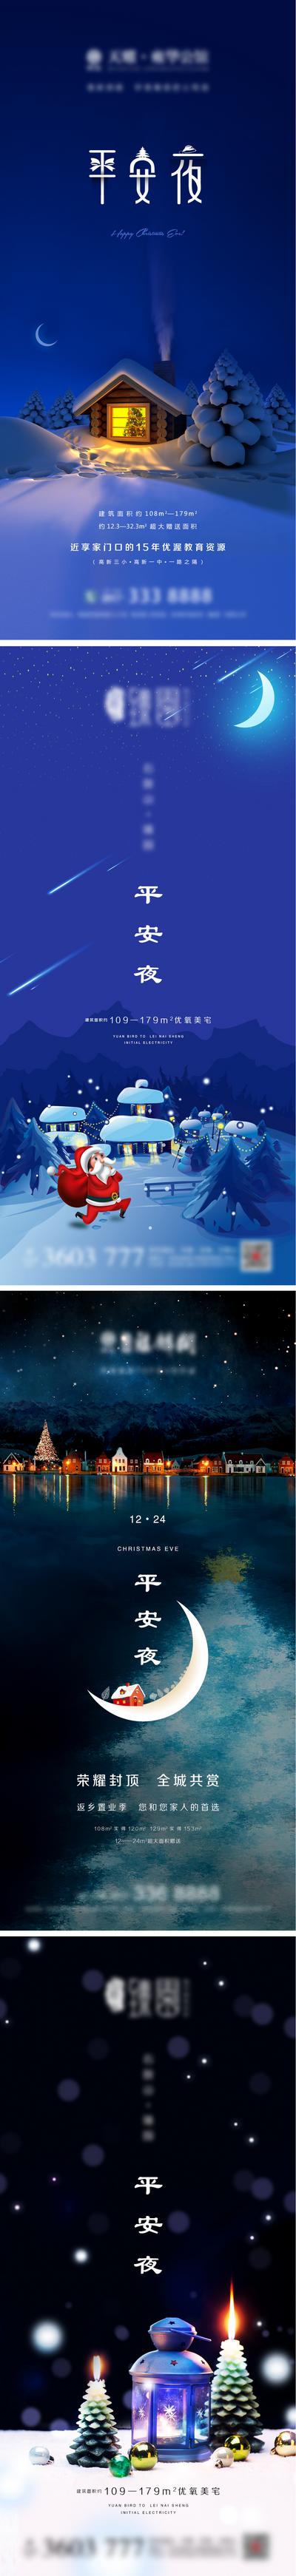 南门网 海报 房地产 公历节日 平安夜 圣诞节 圣诞老人 雪地